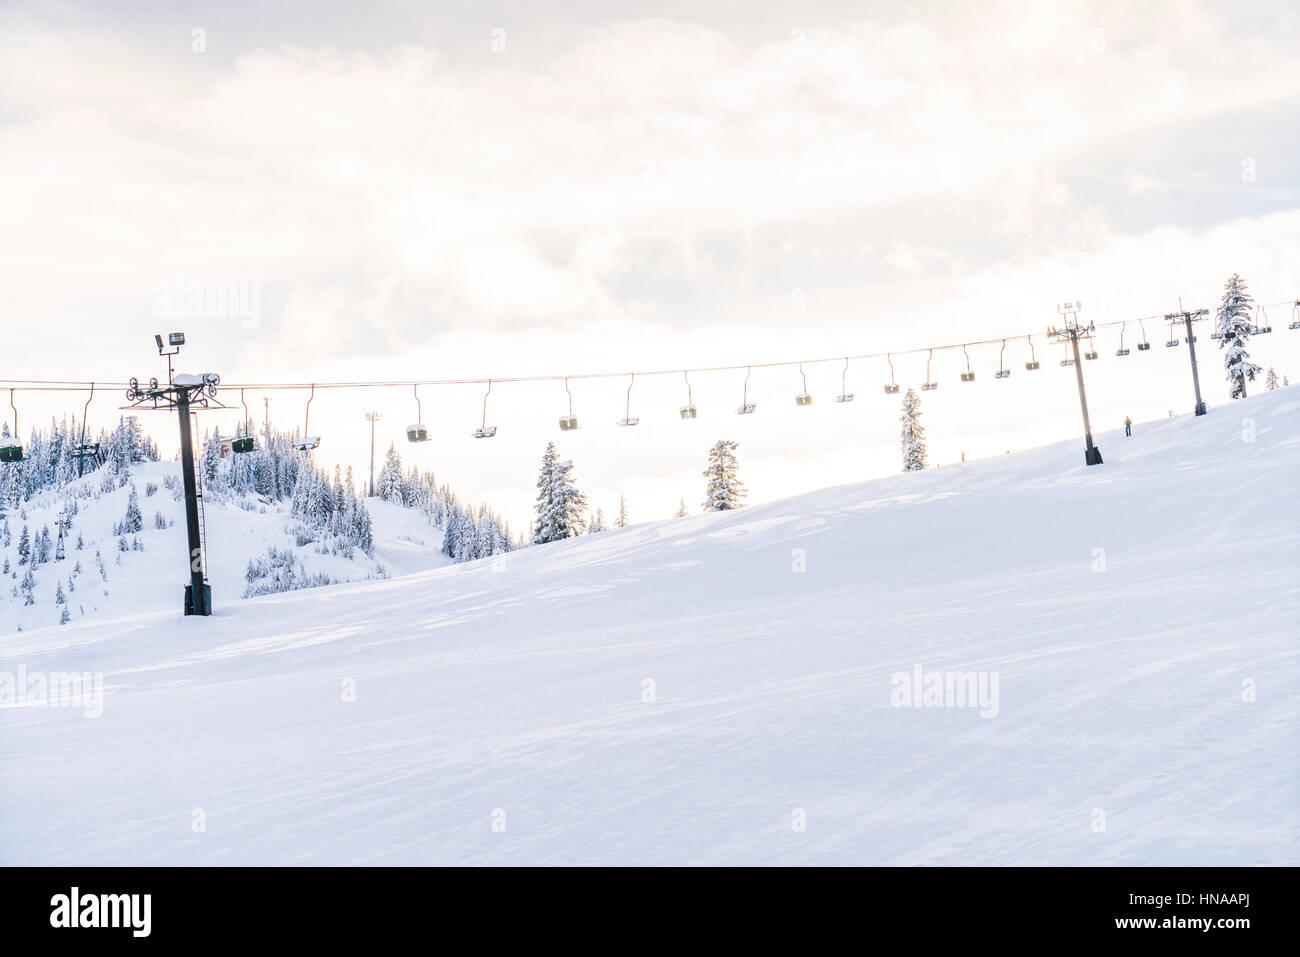 schöne Skilift über Schneeberg im Skigebiet mit blauem Himmelshintergrund. Stockfoto